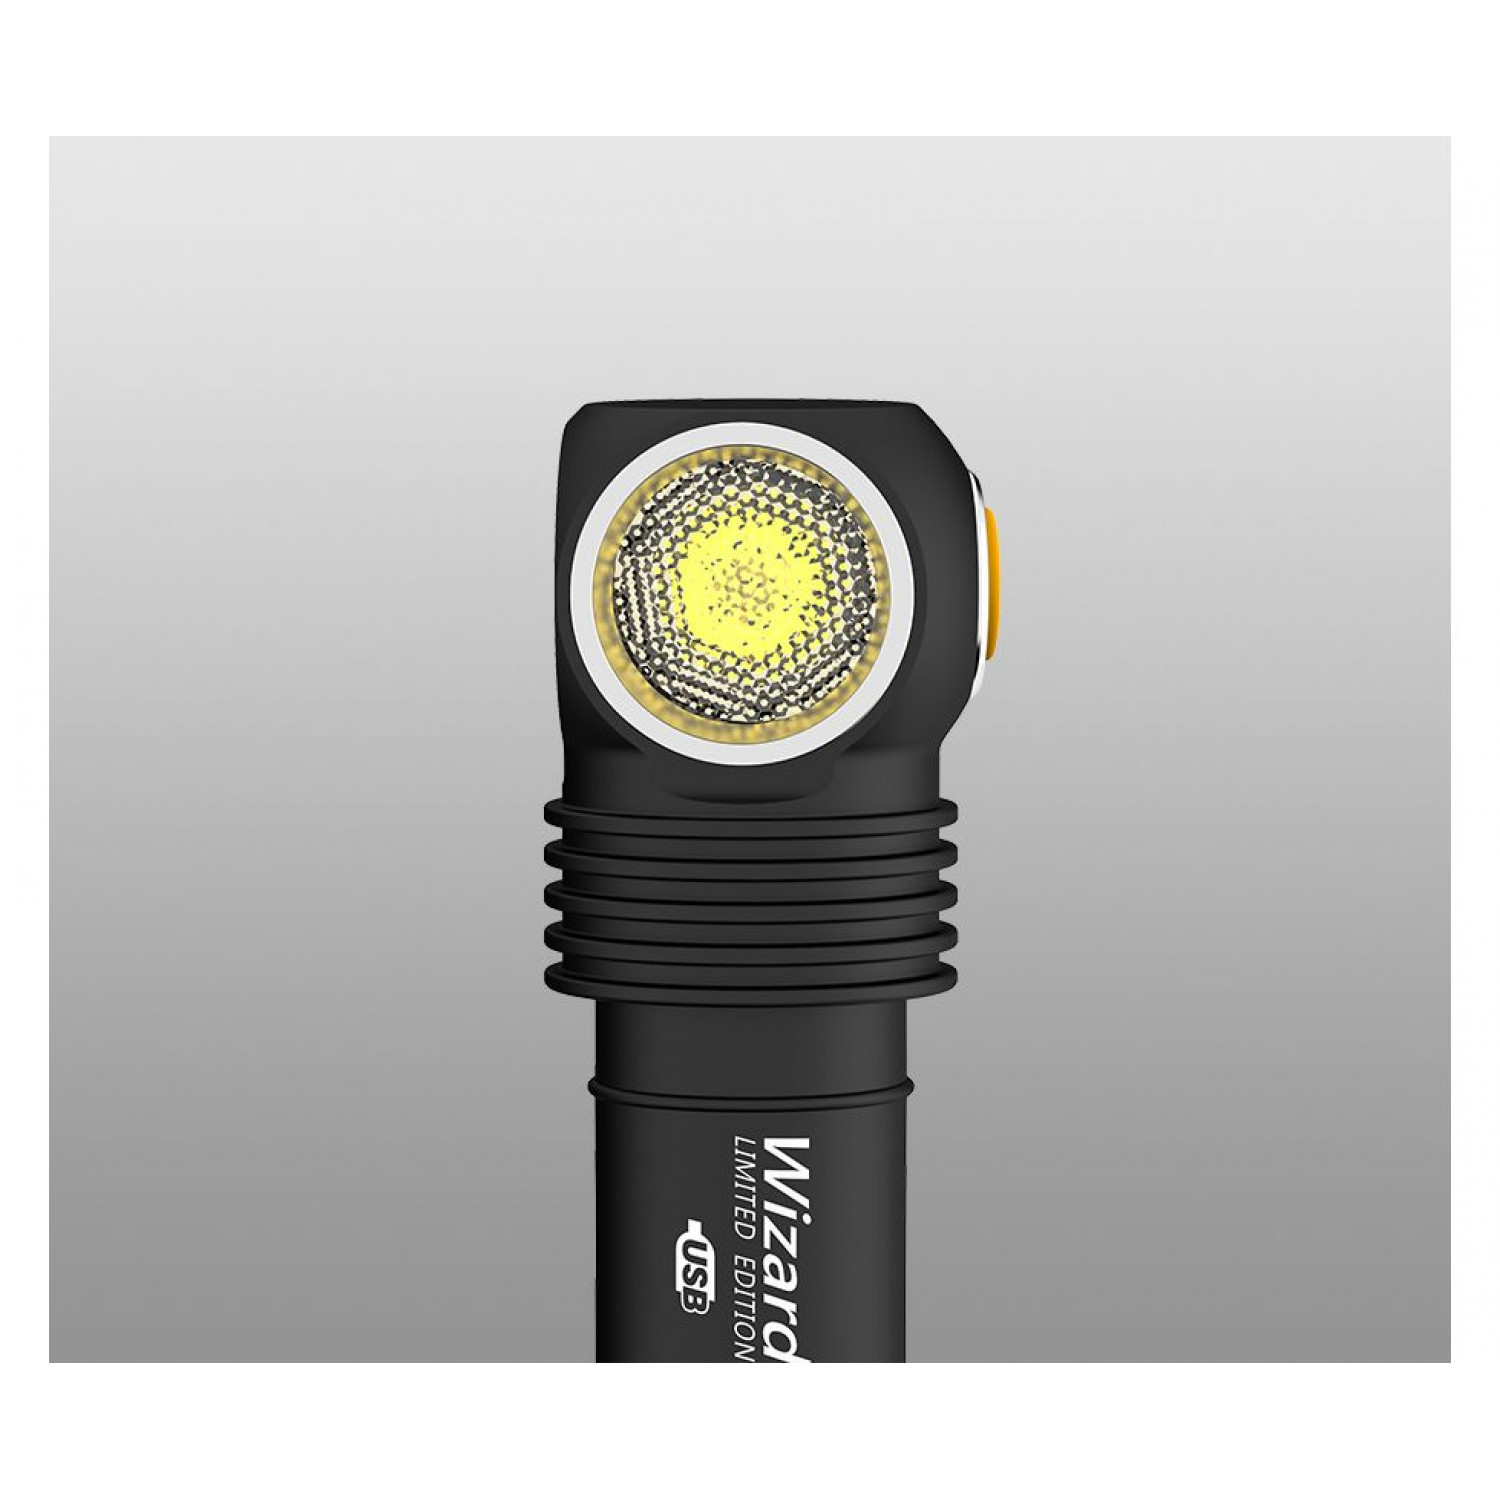 Мультифонарь светодиодный Armytek Wizard ProPro Magnet USB Nichia LED, теплый свет - фото 4